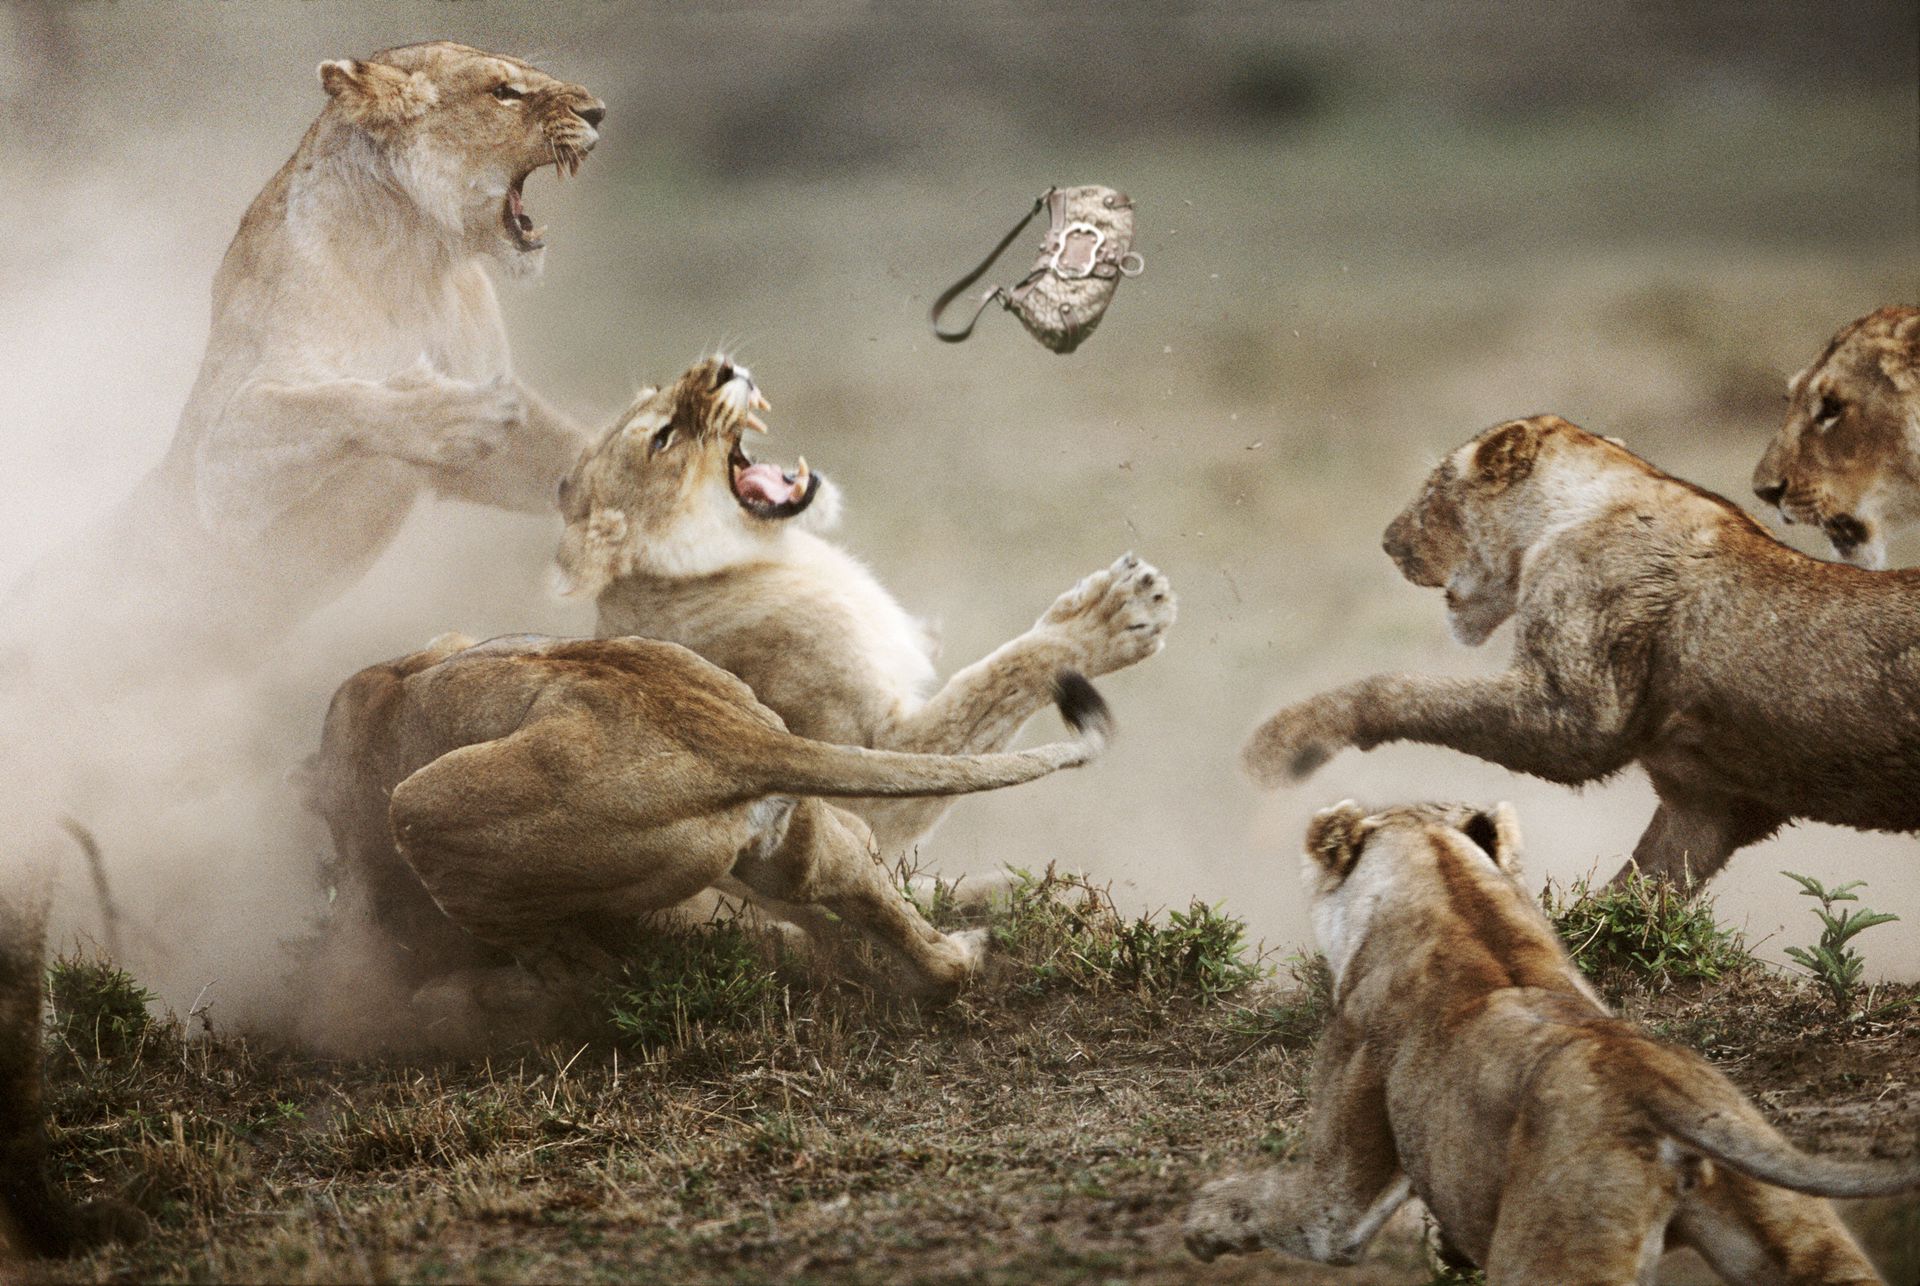 Жестокие схватки. Битва Львов за Прайд. Стив Блум фотограф. Животные дерутся. Агрессия животных.